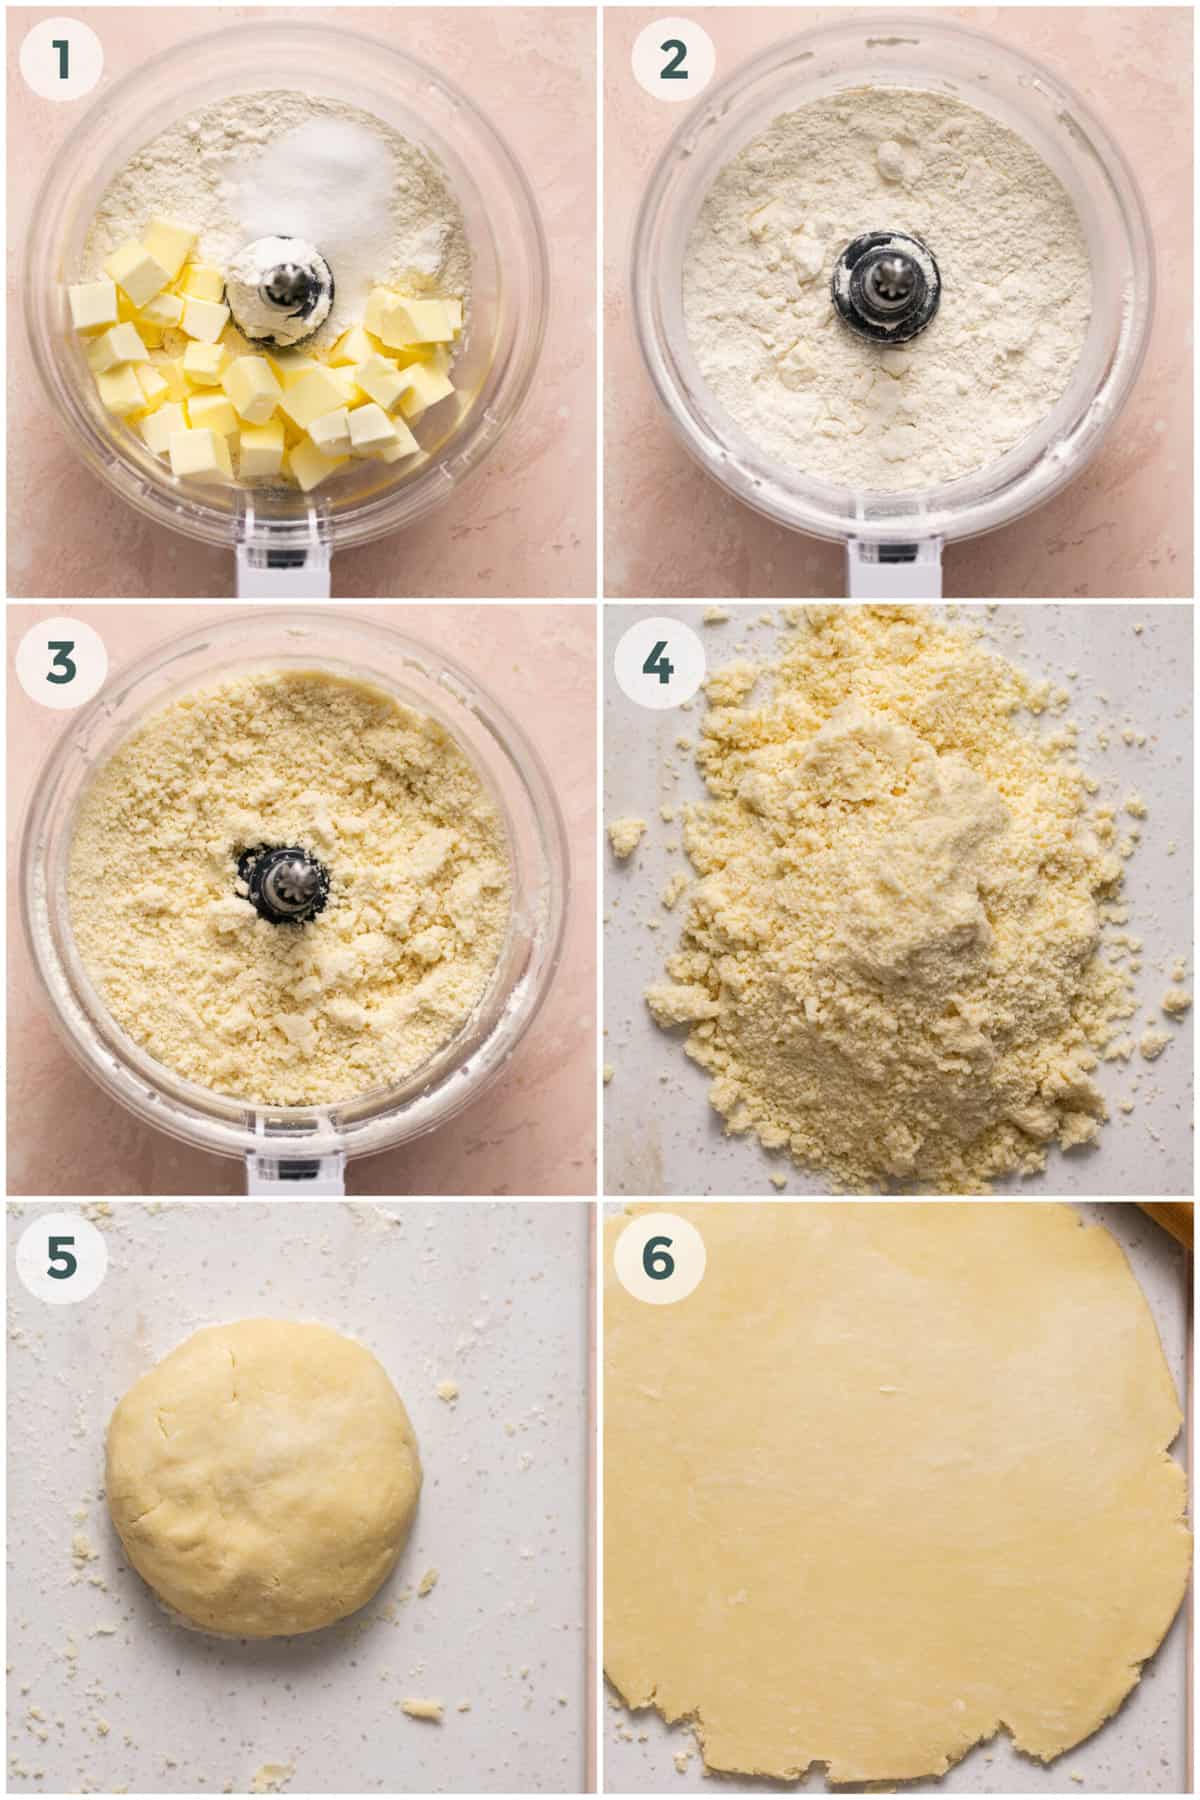 steps 1-6 of preparing lemon tart recipe